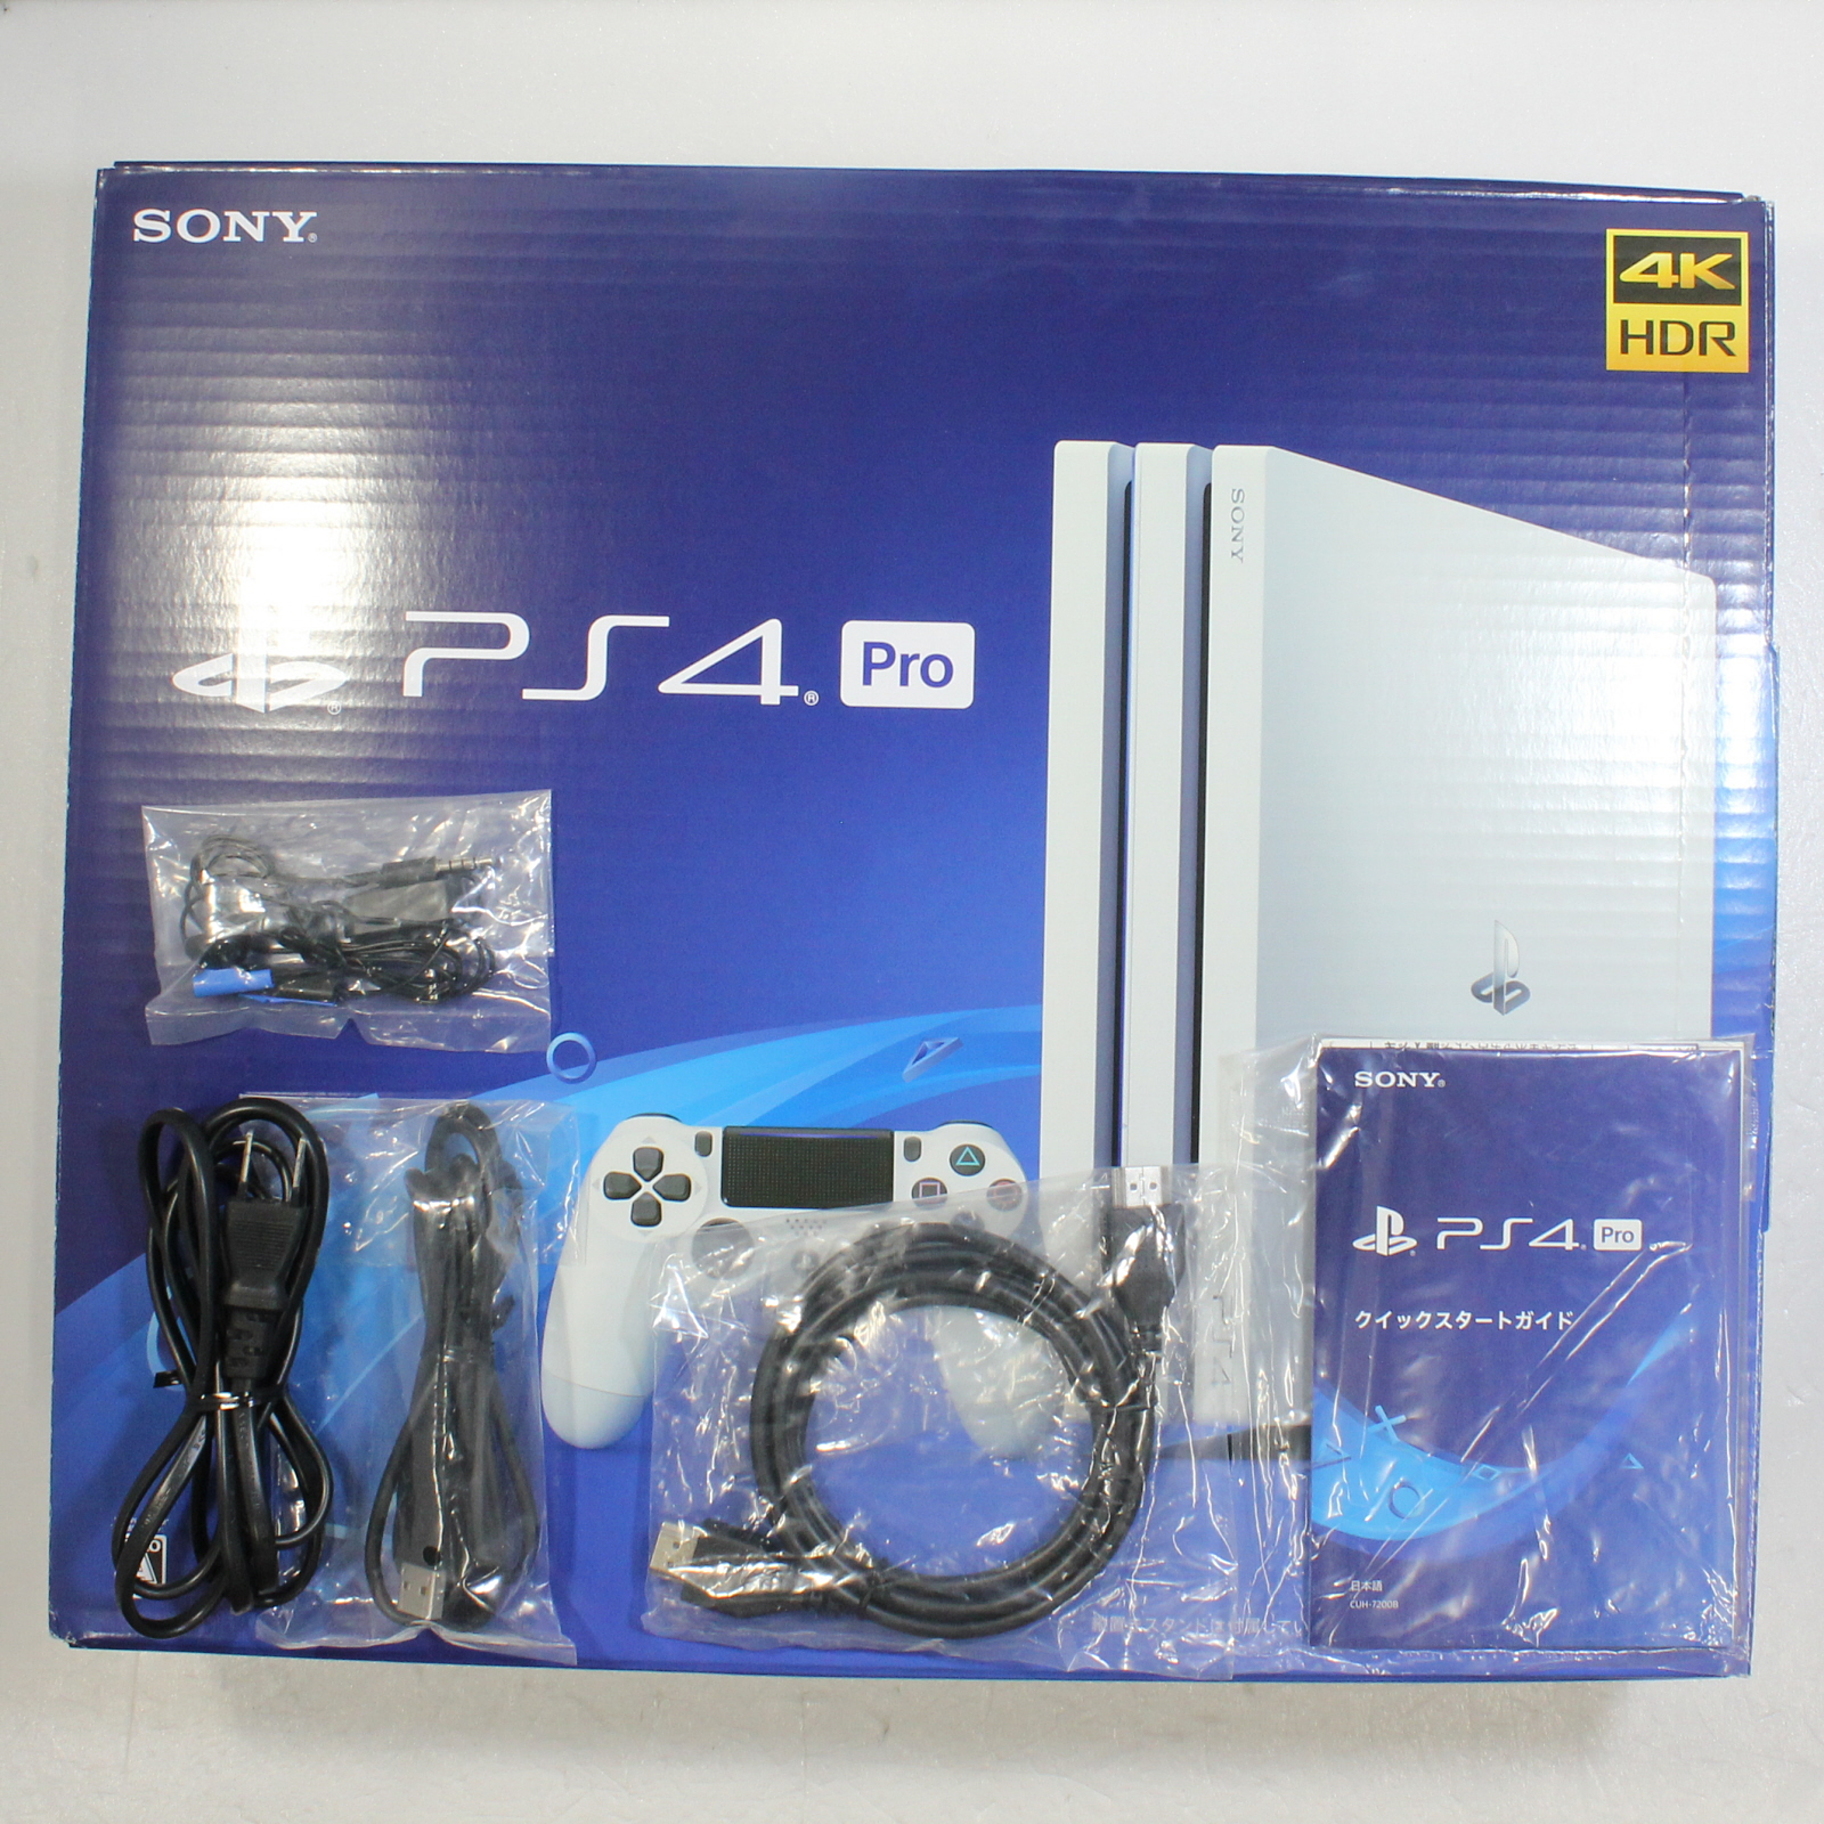 〔中古品〕 PlayStation 4 Pro グレイシャー・ホワイト 1TB CUH-7200BB02_4